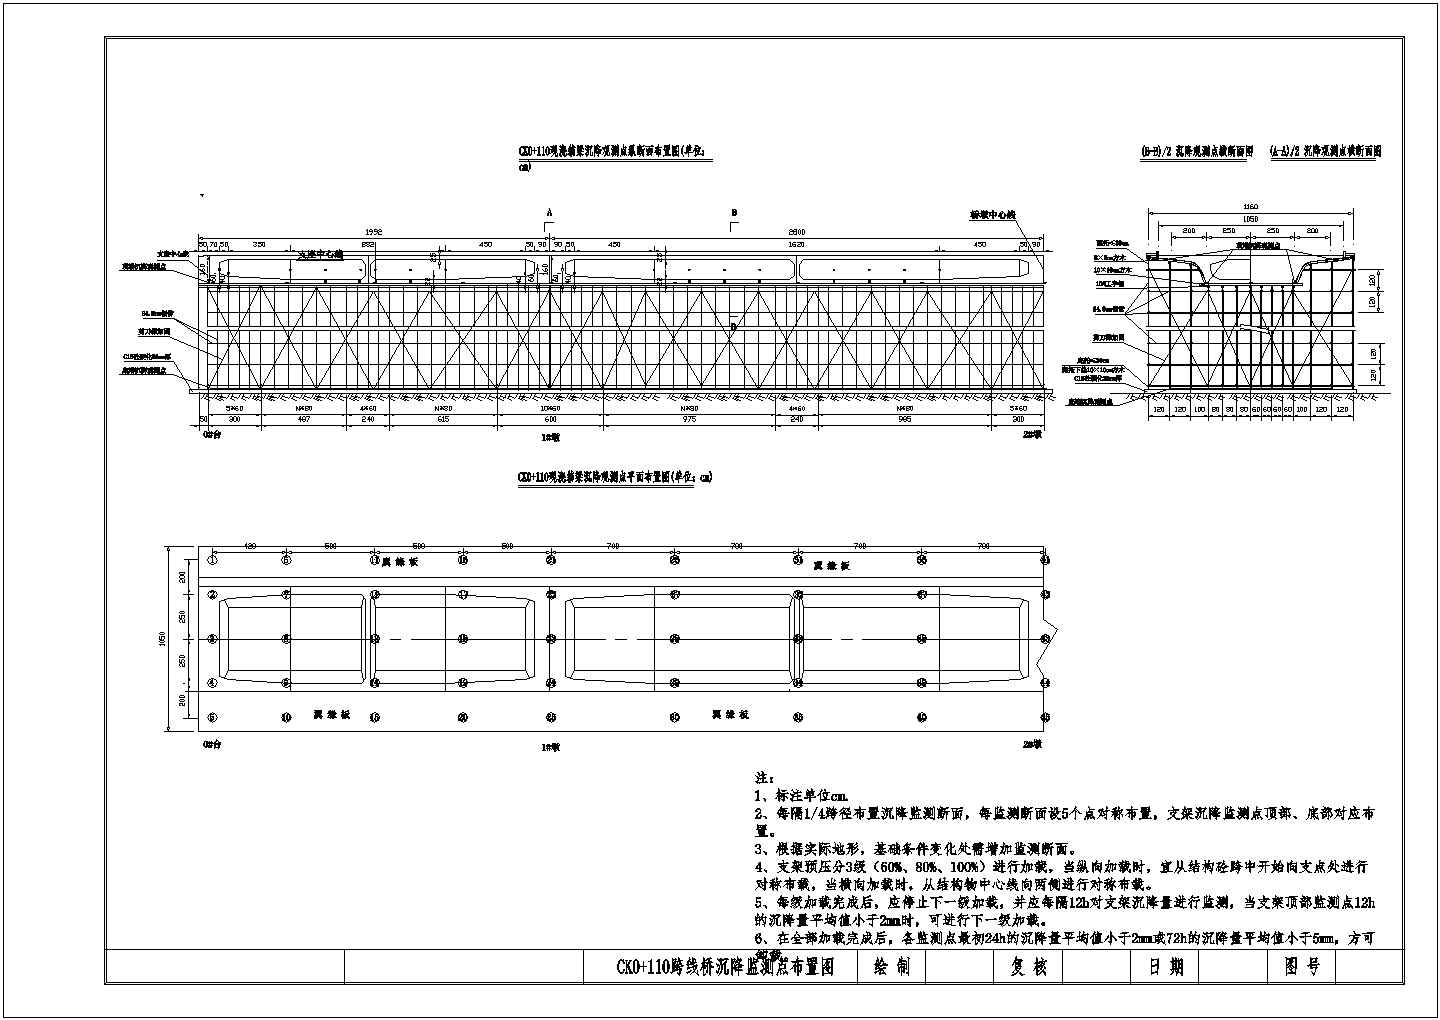 公路铁路特大桥现浇箱梁专项施工方案合集（284页附CAD图计算书满堂支架）